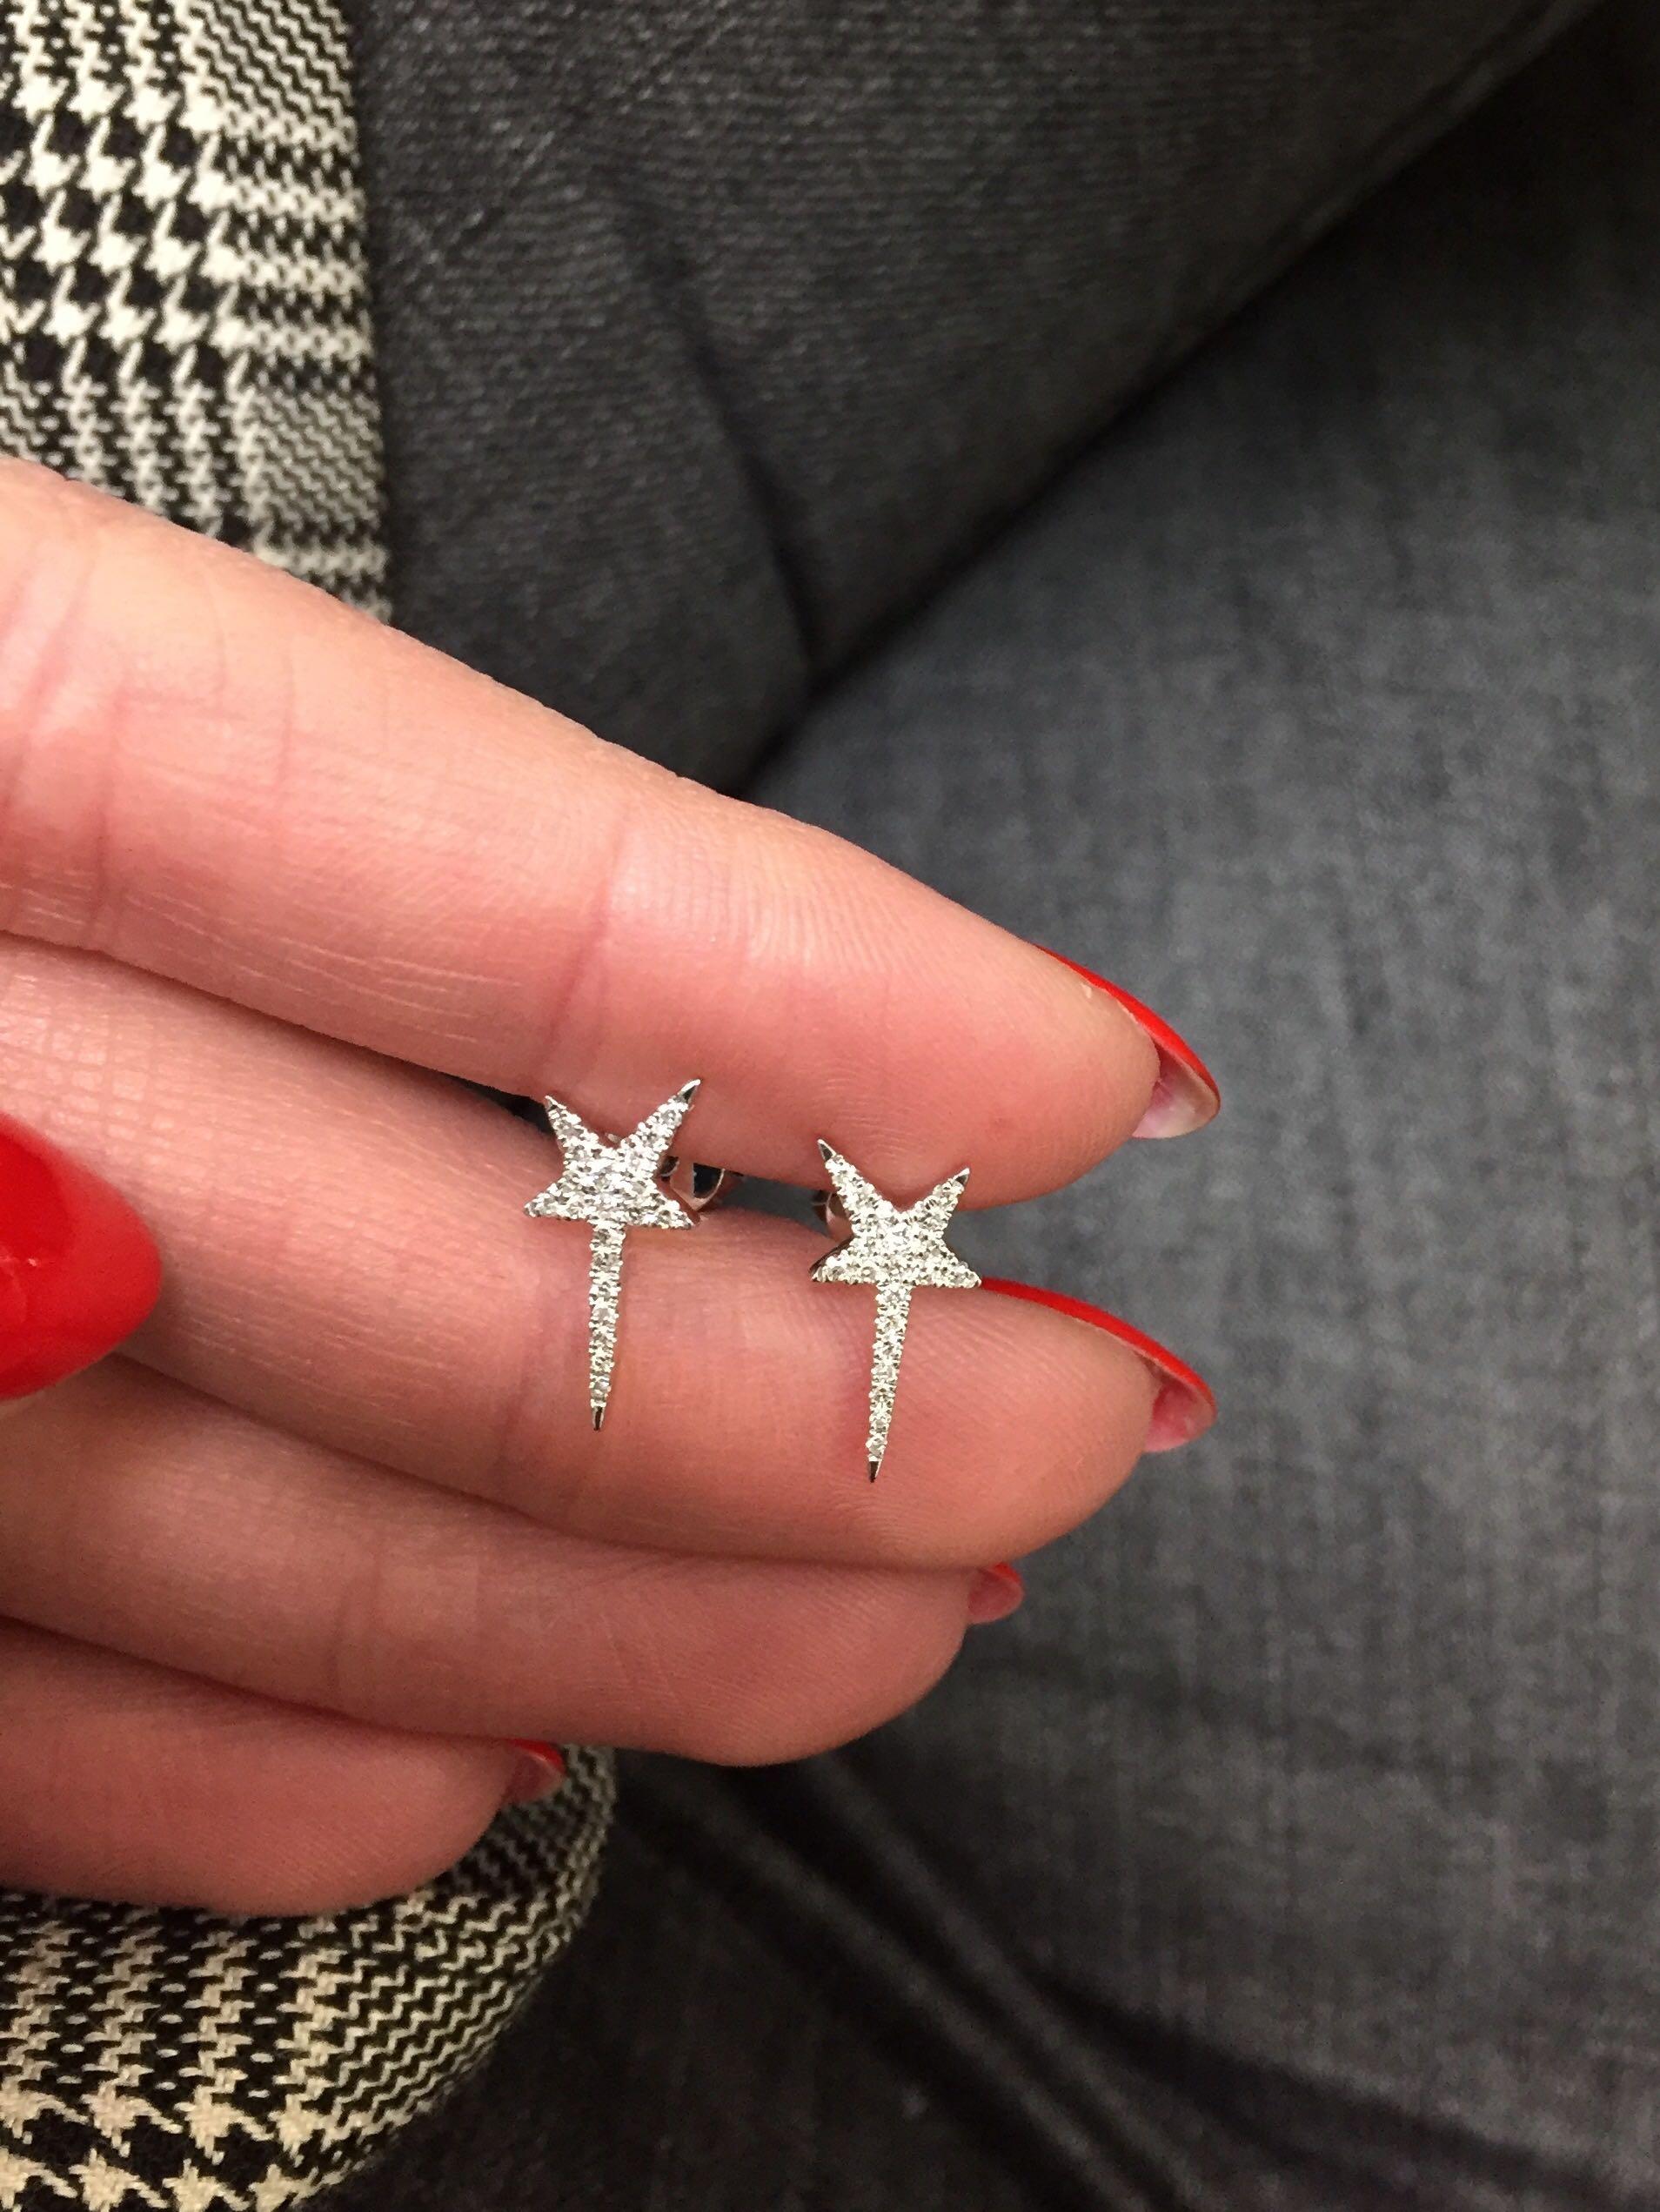 Women's Rachel Koen Pave Diamond Star Stud Earrings 14K White Gold 0.13 Cttw For Sale